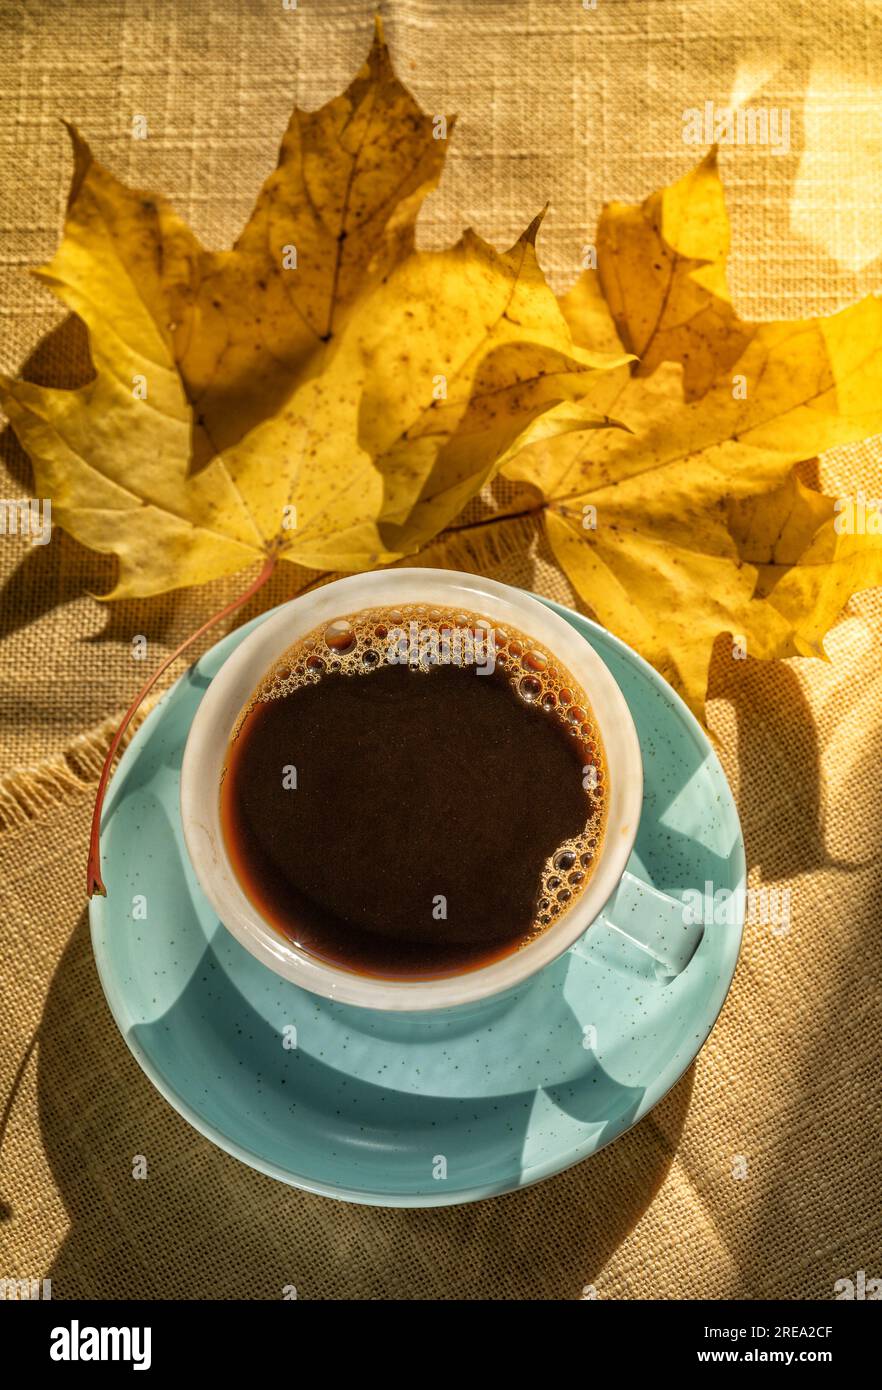 Tasse mit schwarzem Kaffee über Herbst gelbe Blätter Hintergrund, flach legen. Tageslicht. Stockfoto